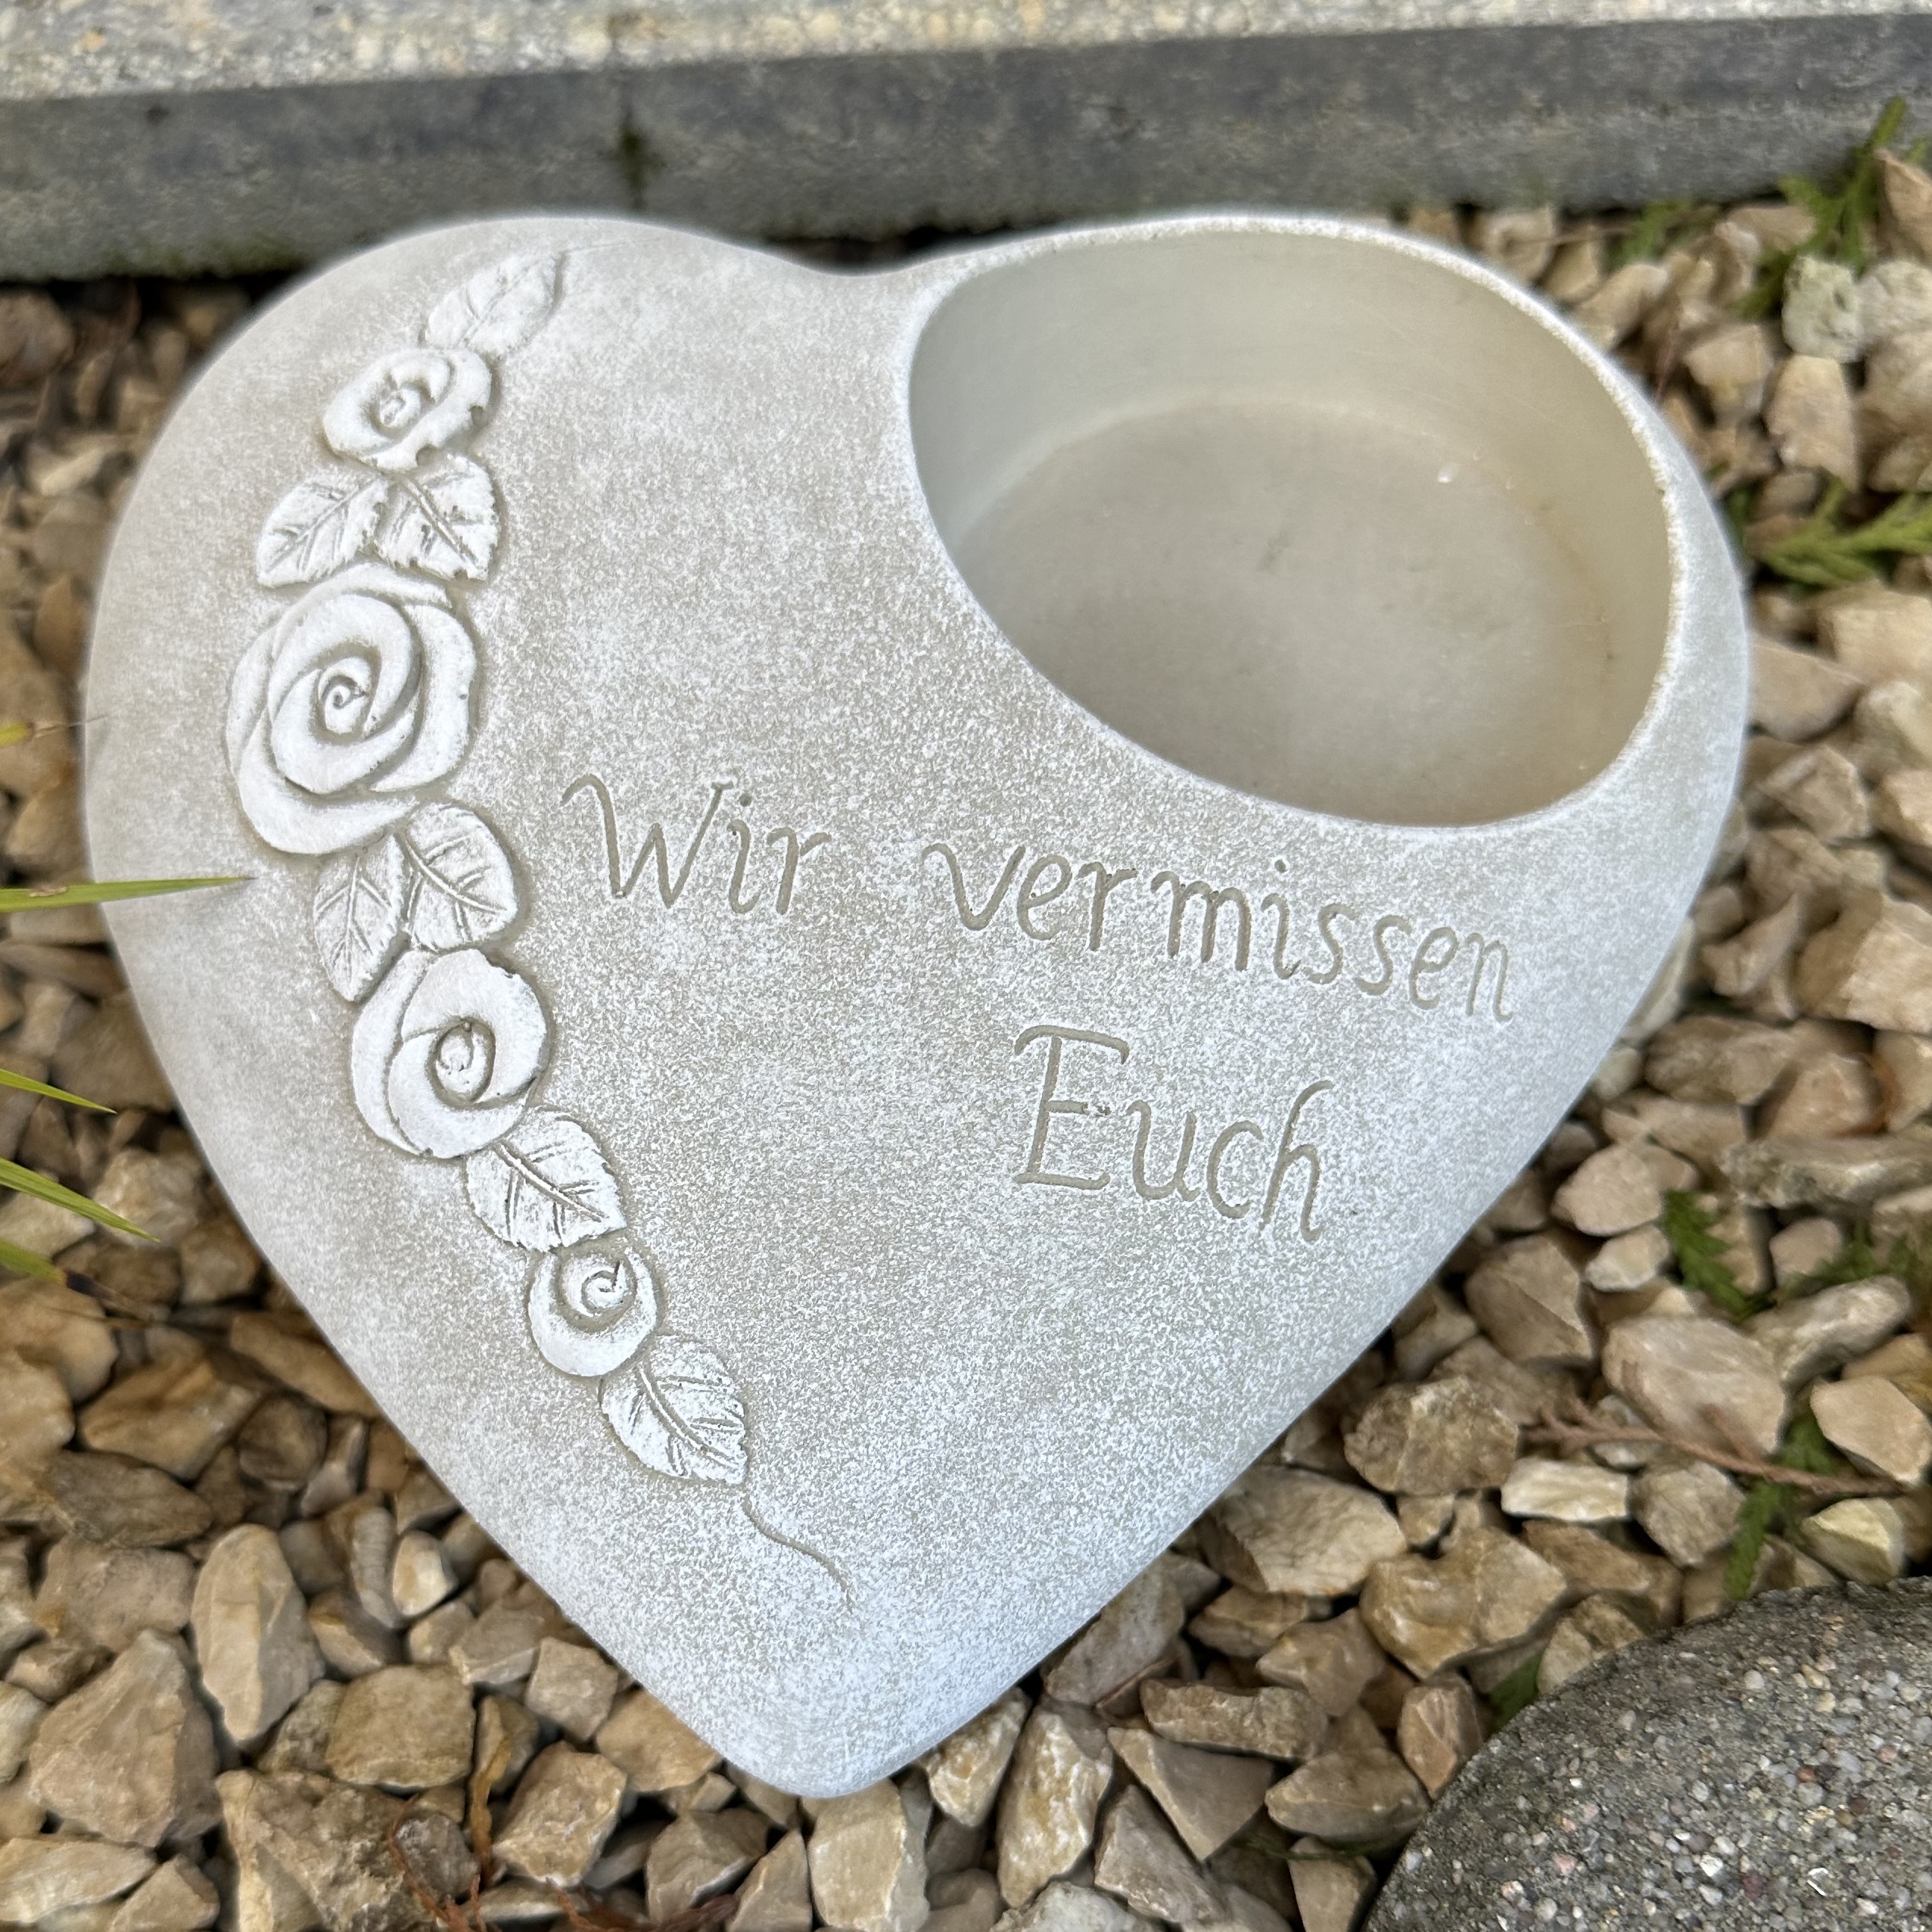 Grabherz Rosenranke - Wir vermissen Euch - Grabschmuck Gedenkstein Trauerherz für  Grablicht weiß 1,8 kg